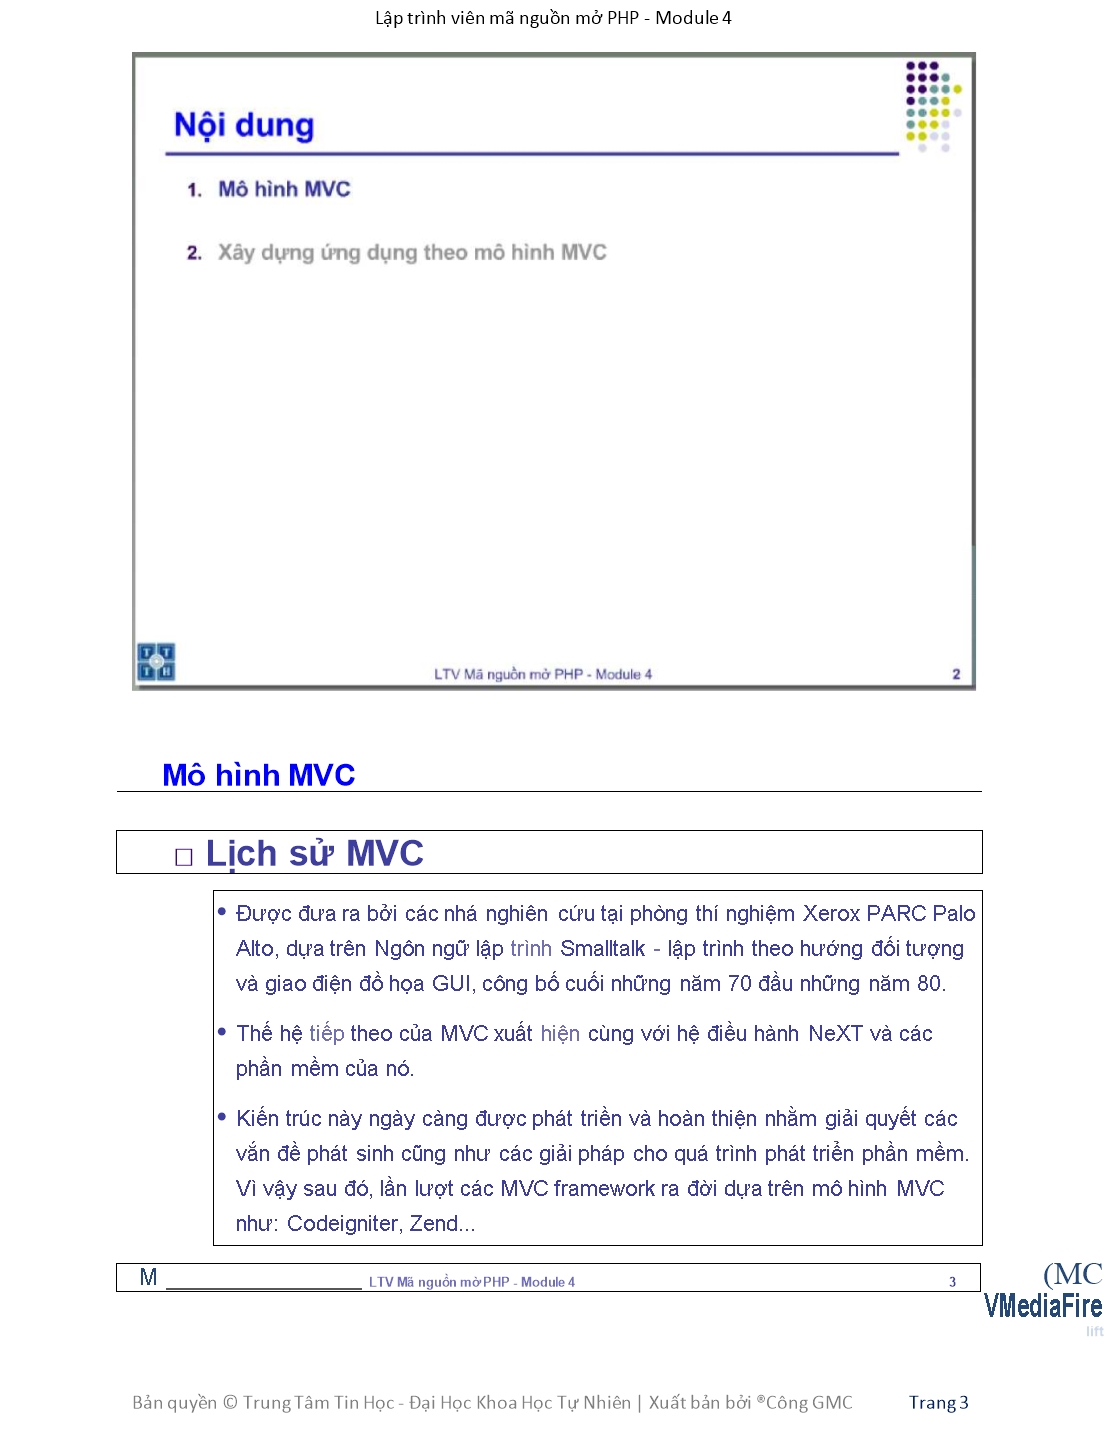 Giáo trình Module 4: Lập trình viên mã nguồn mở PHP - Bài 1: Mô hình MVC trang 3